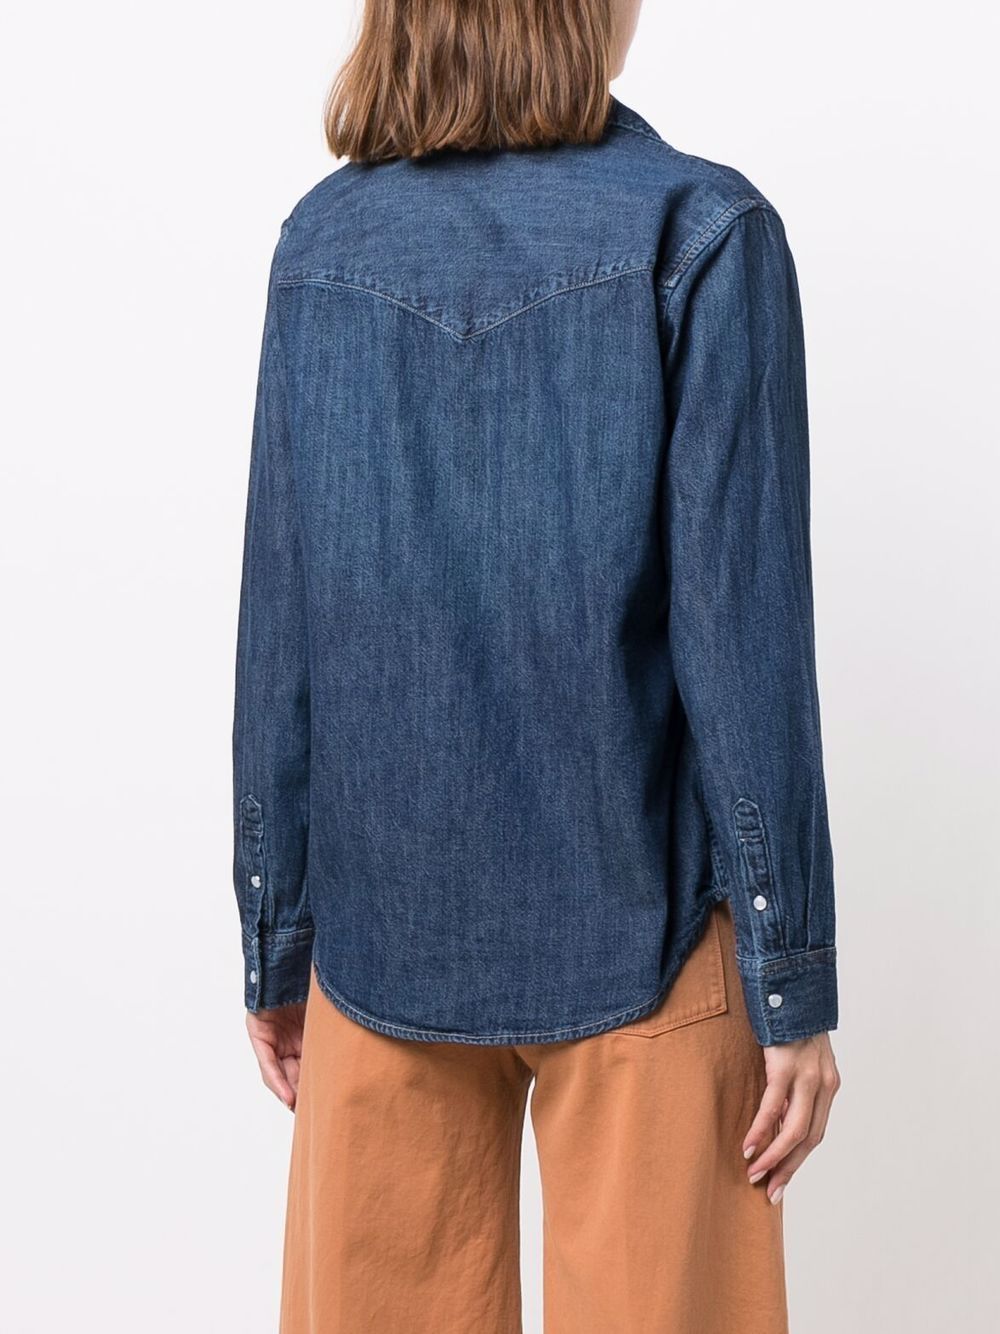 Indigo blue cotton button-down denim shirt